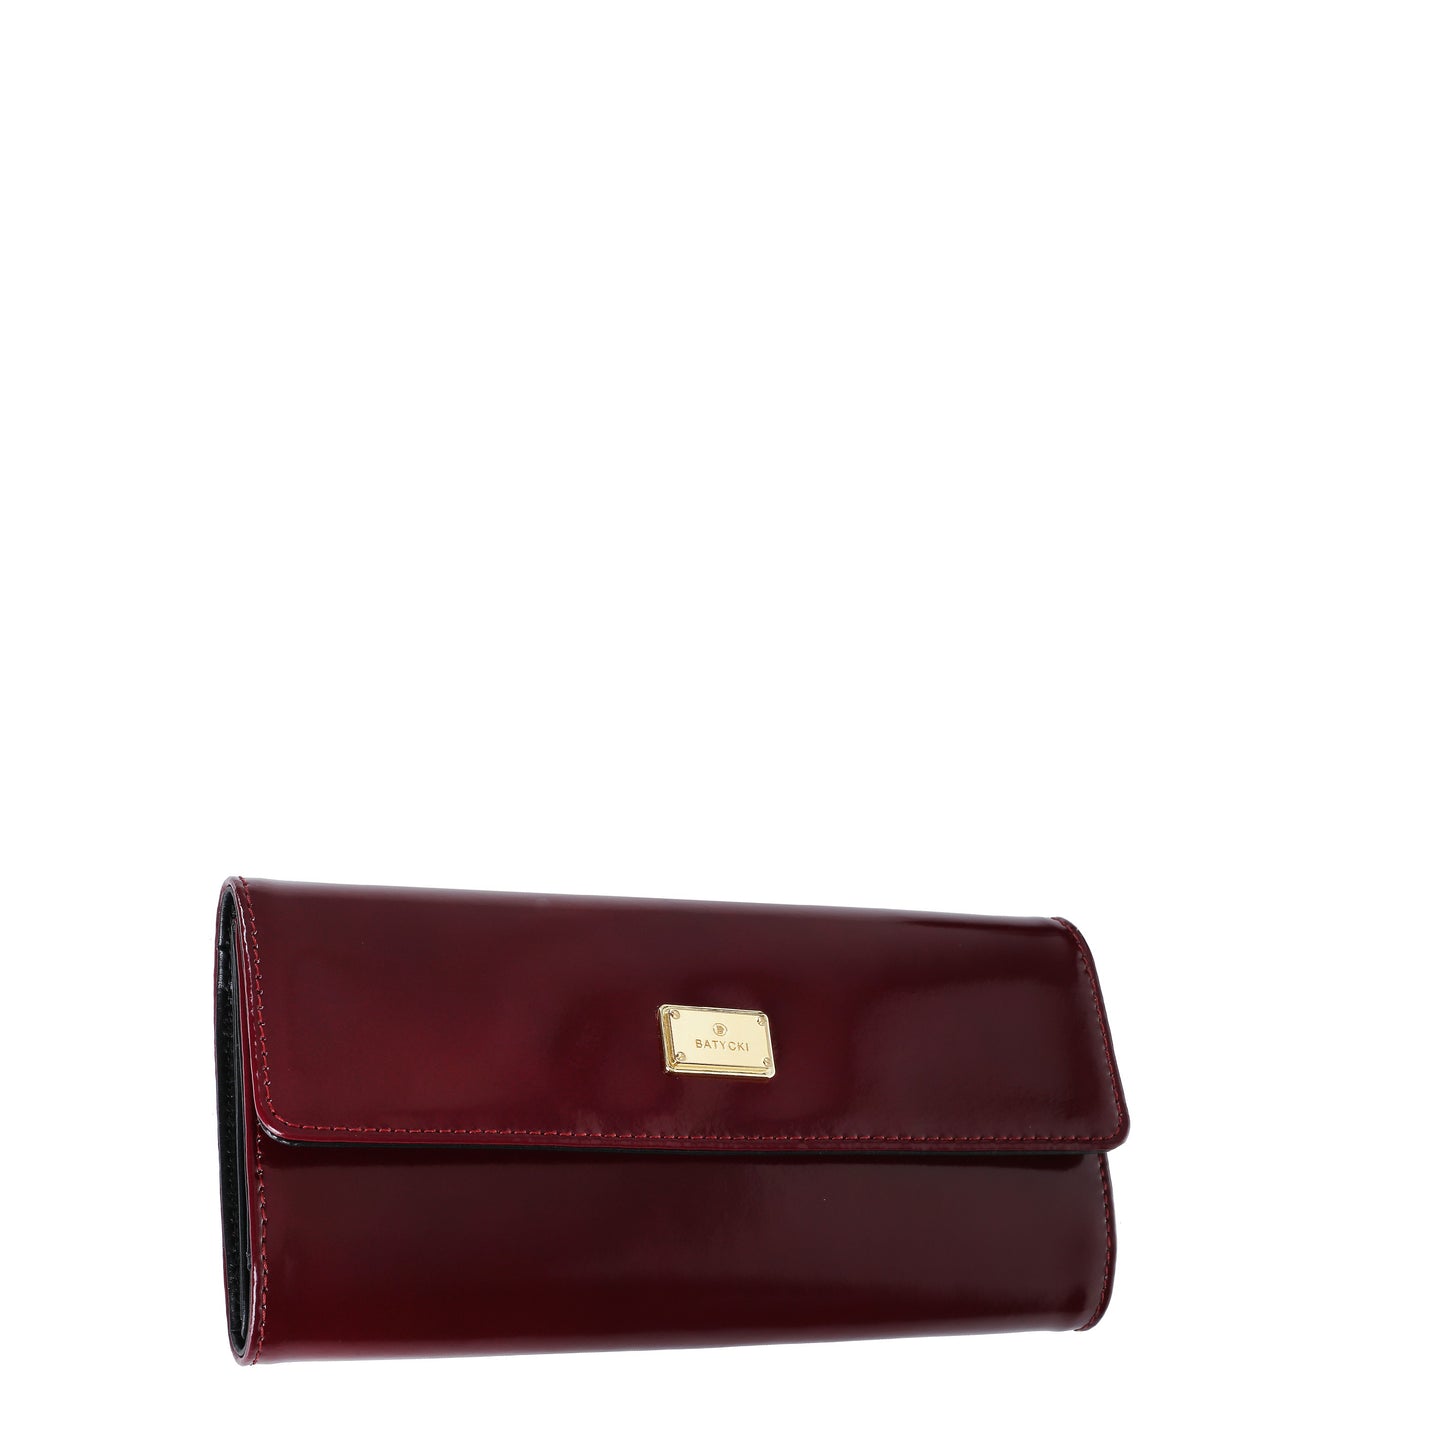 SPECCHIO CLARET women's leather wallet